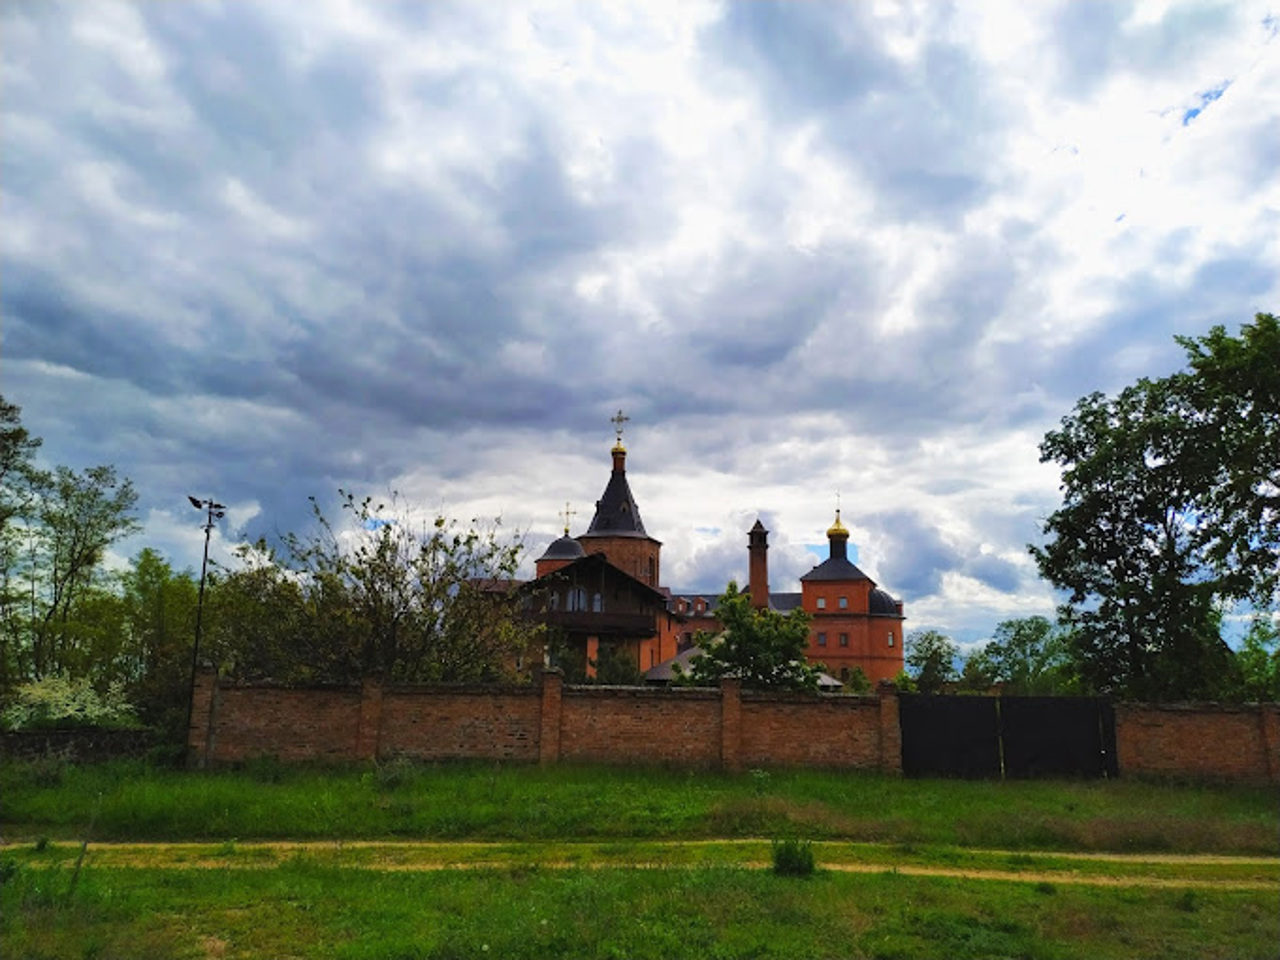 Okhtyrskyi Trinity Monastery, Chernechchyna